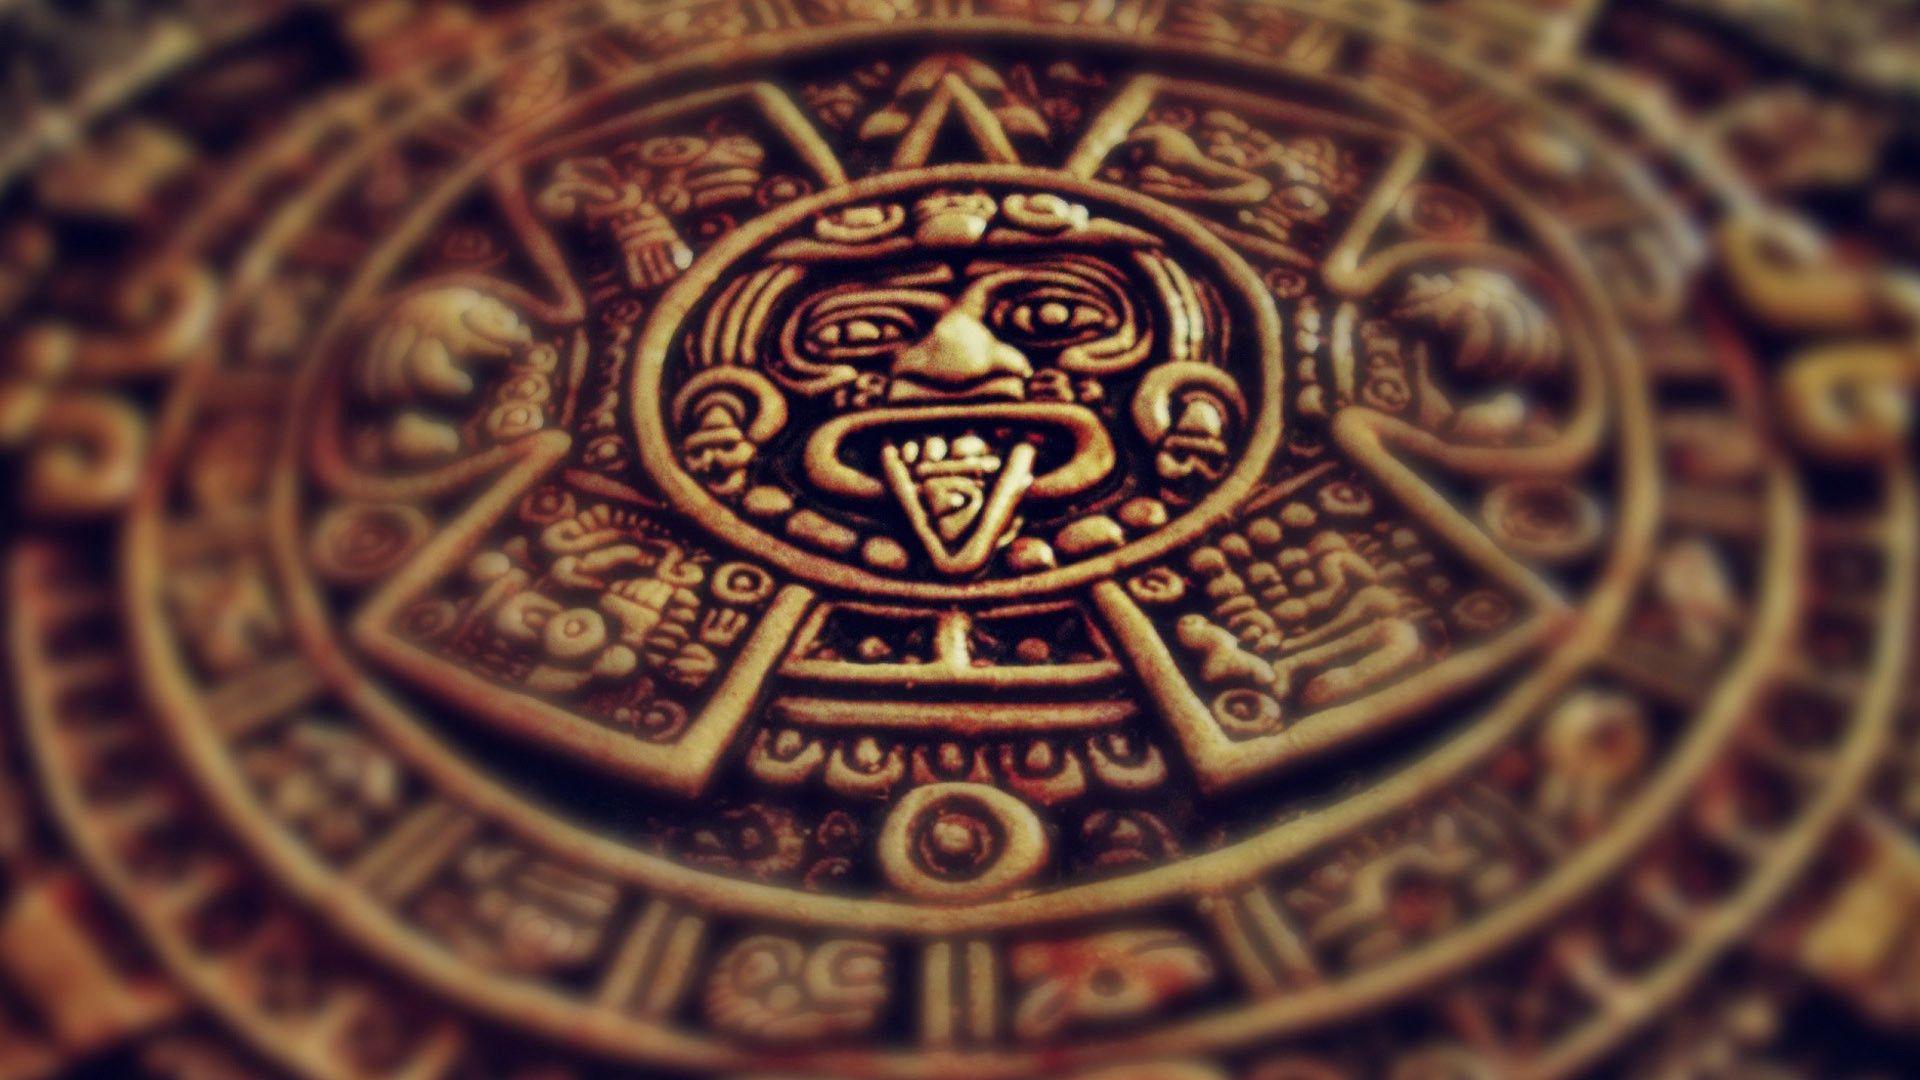 Aztec Calendar wallpaper by Almoney7  Download on ZEDGE  4c92